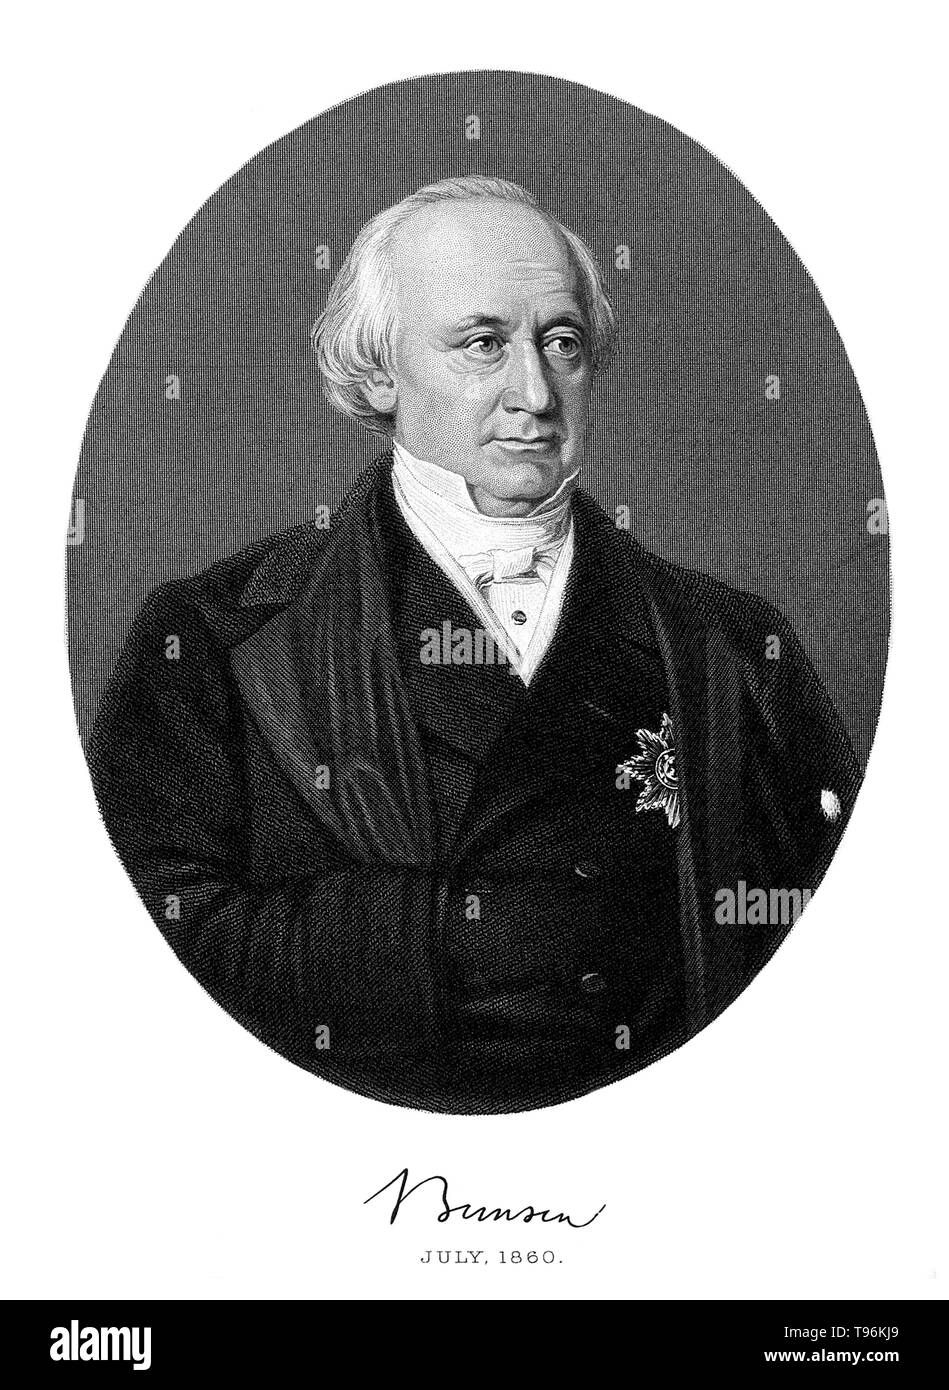 Robert Wilhelm Bunsen Eberhard (30 mars 1811 - 16 Augus, 1899) est un chimiste allemand. Il enquête sur les éléments chauffants de spectres d'émission, et a découvert le césium (en 1860) et de rubidium (en 1861) avec le physicien Gustav Kirchhoff. Bunsen mis au point plusieurs méthodes d'analyse de gaz, a été un pionnier de la photochimie, et n premiers travaux dans le domaine de l'organoarsenic la chimie. Banque D'Images